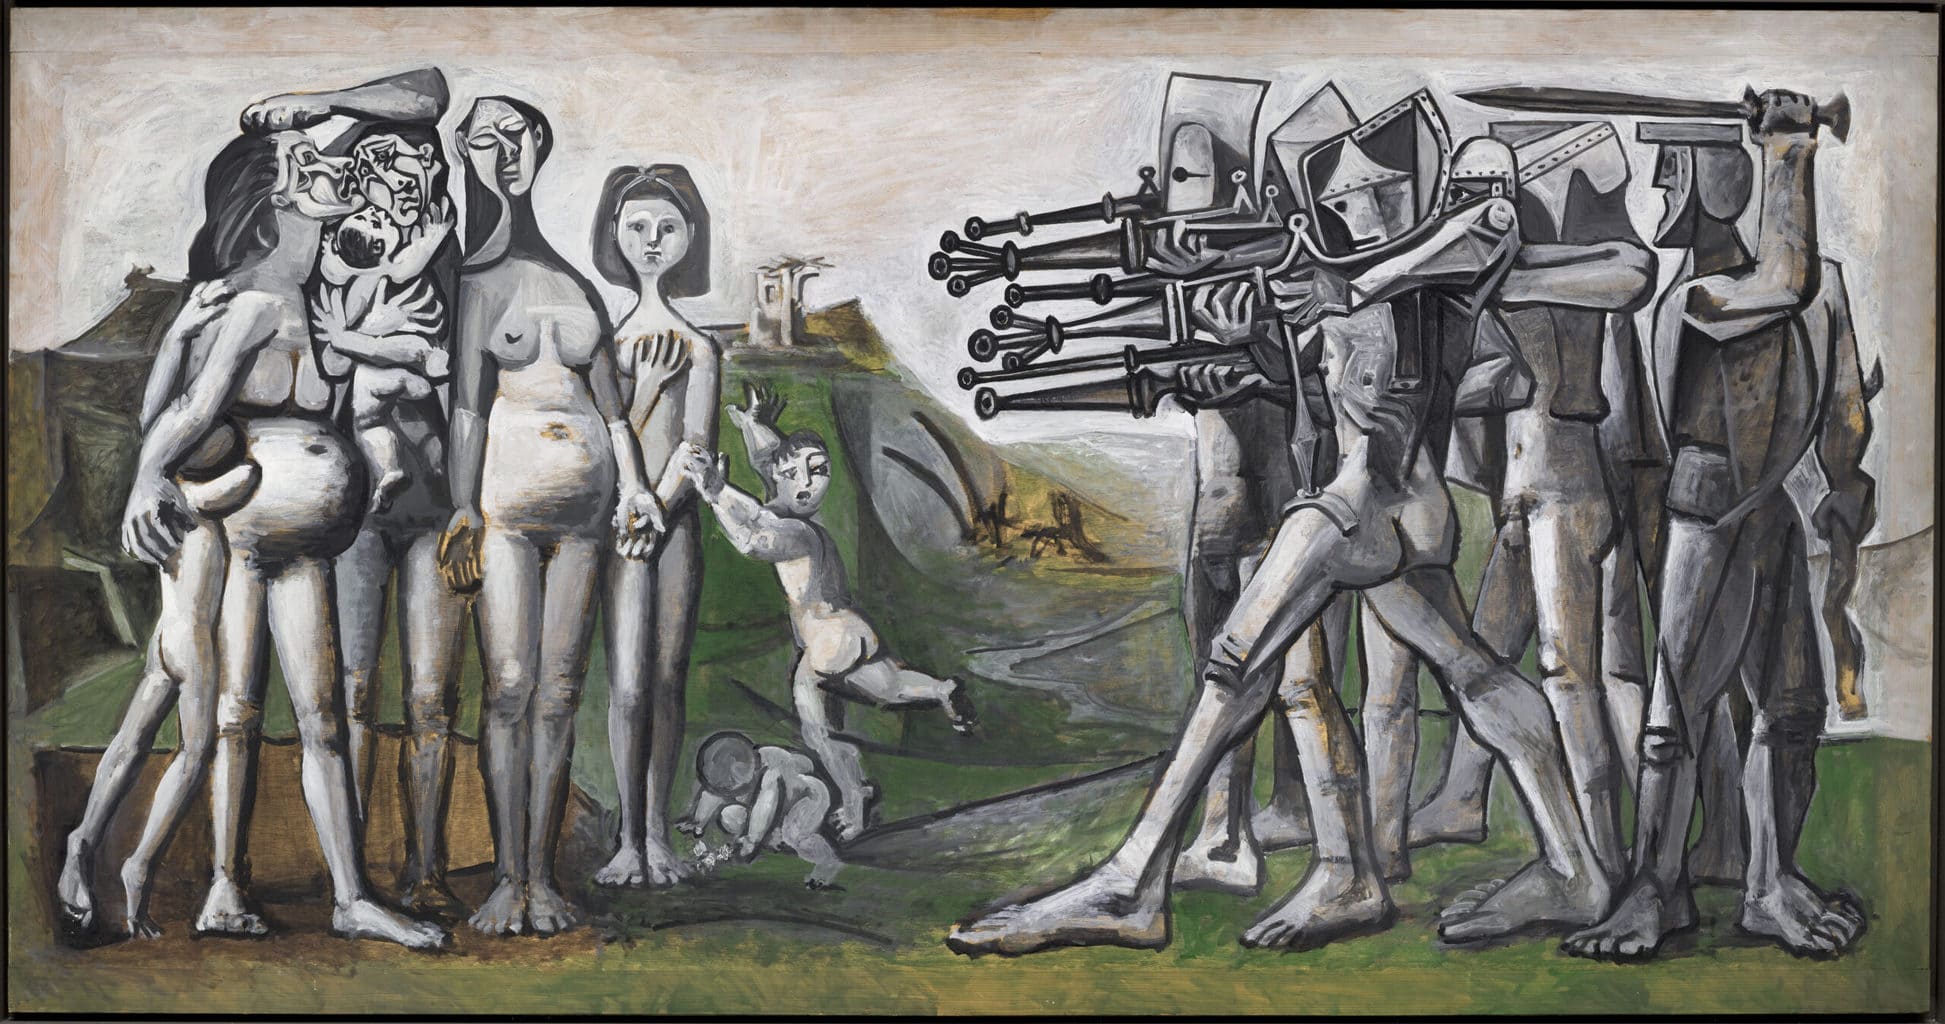 Pablo Picasso, "Massacre in Korea" (1951)